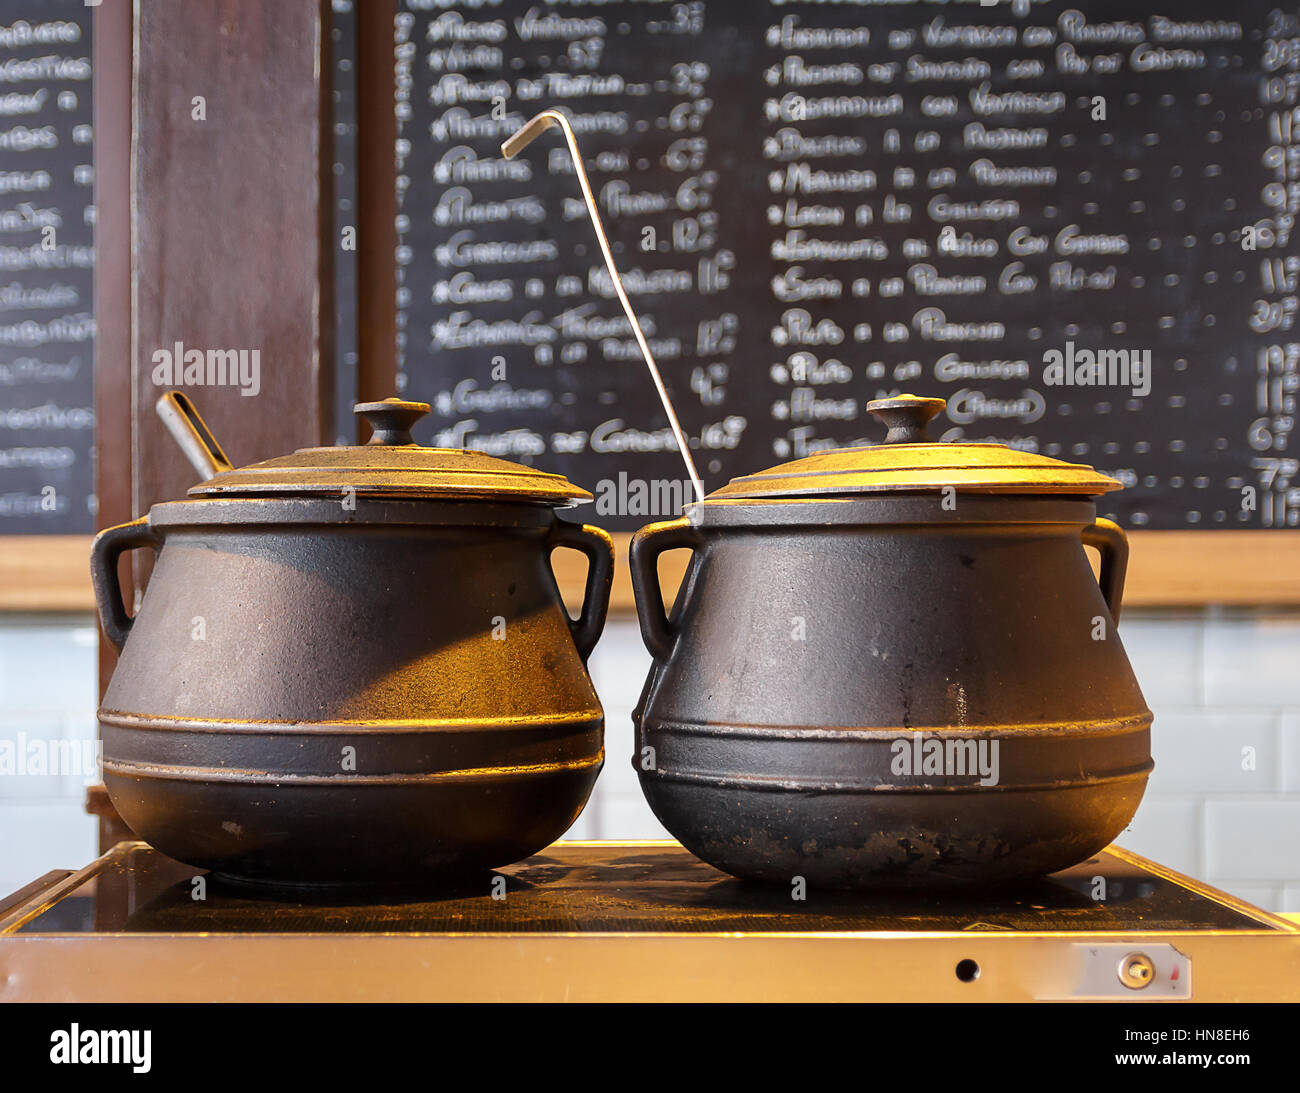 Le pot de fer de fonte est adapté à l'alimentation de la chaleur sur la longue cuisson Banque D'Images